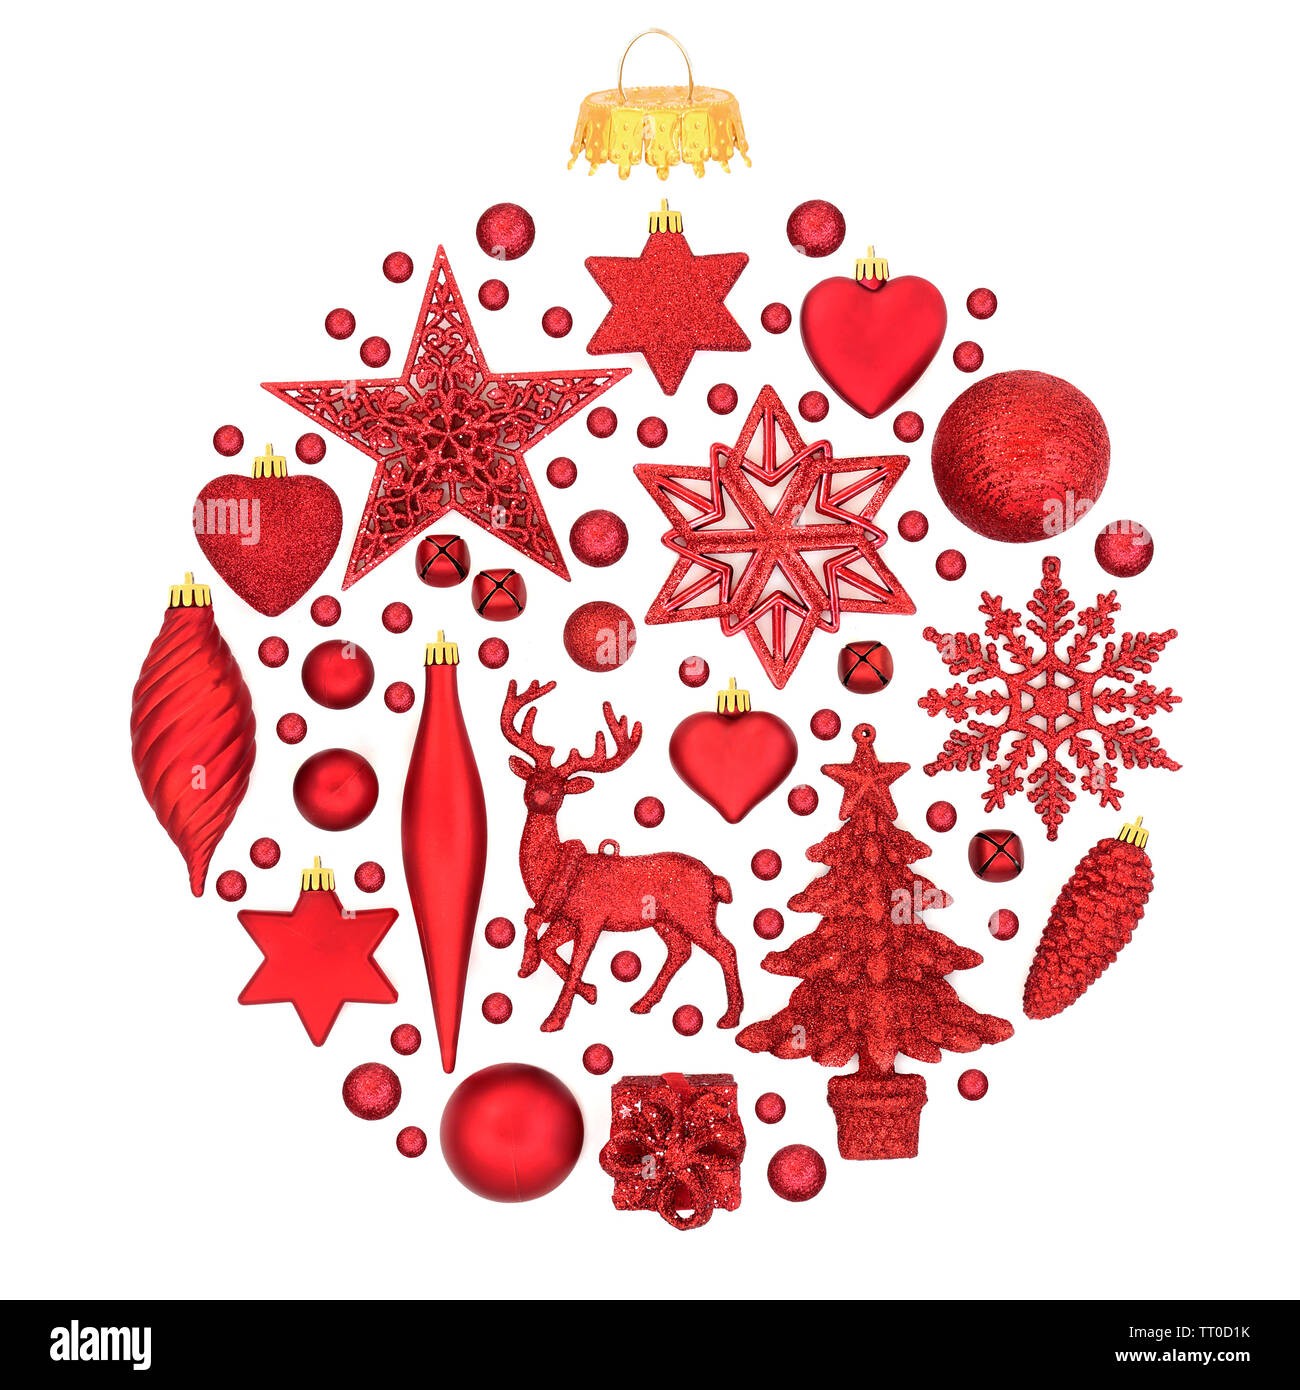 Décorations de Noël rouges formant un ornement babiole abstraite sur fond blanc. Carte traditionnelle des symboles pour la saison de fête. Banque D'Images